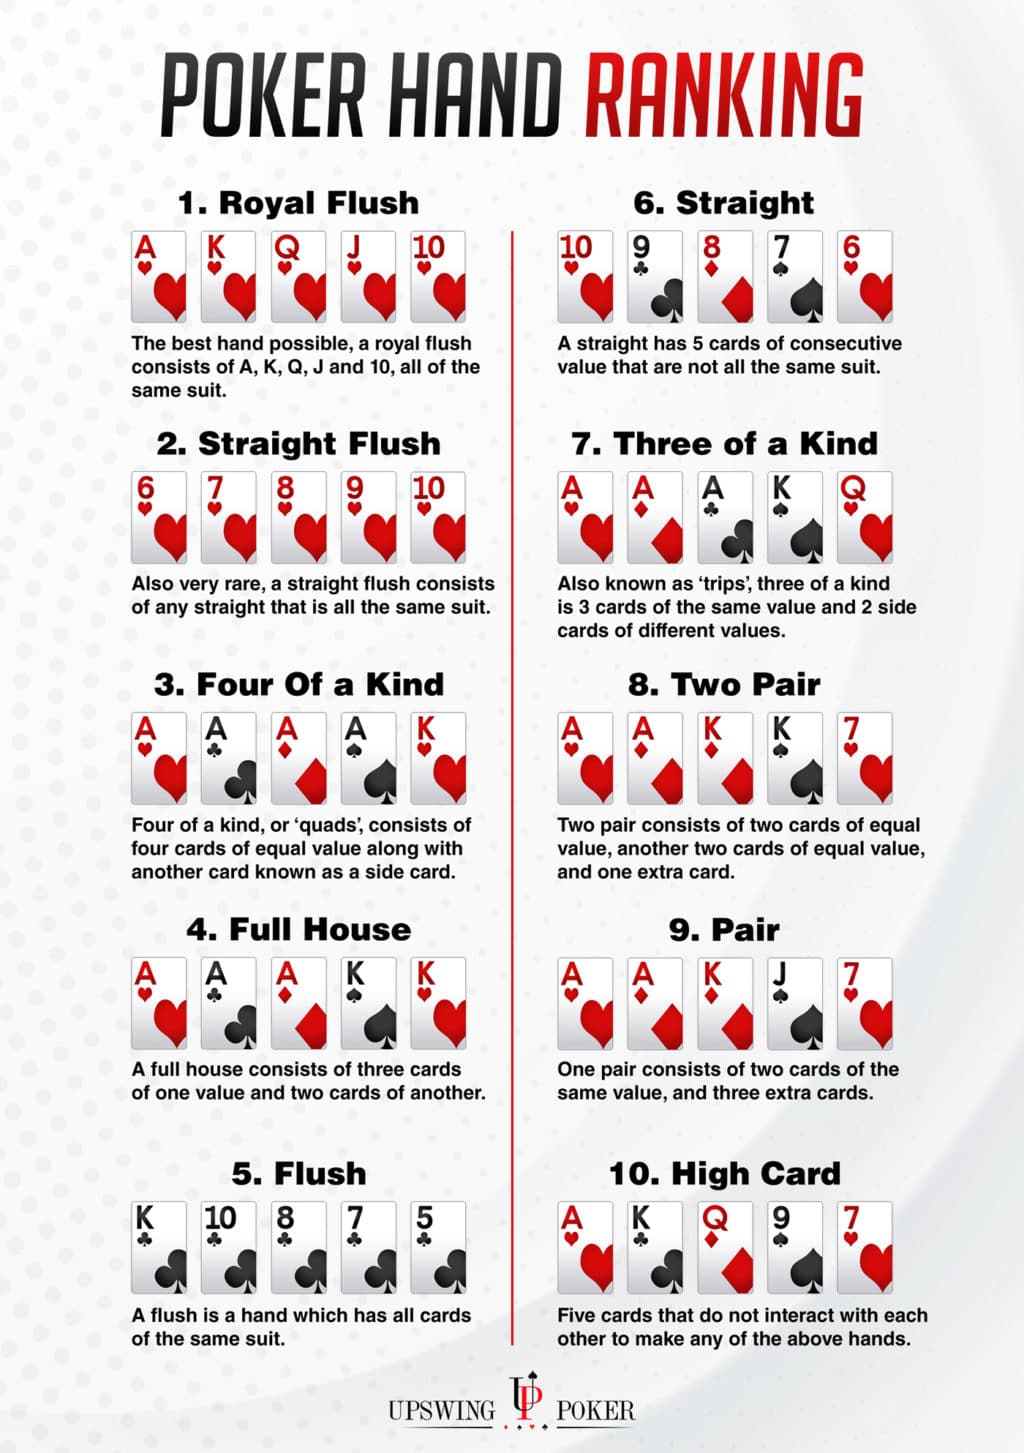 Hand Rankings in Poker